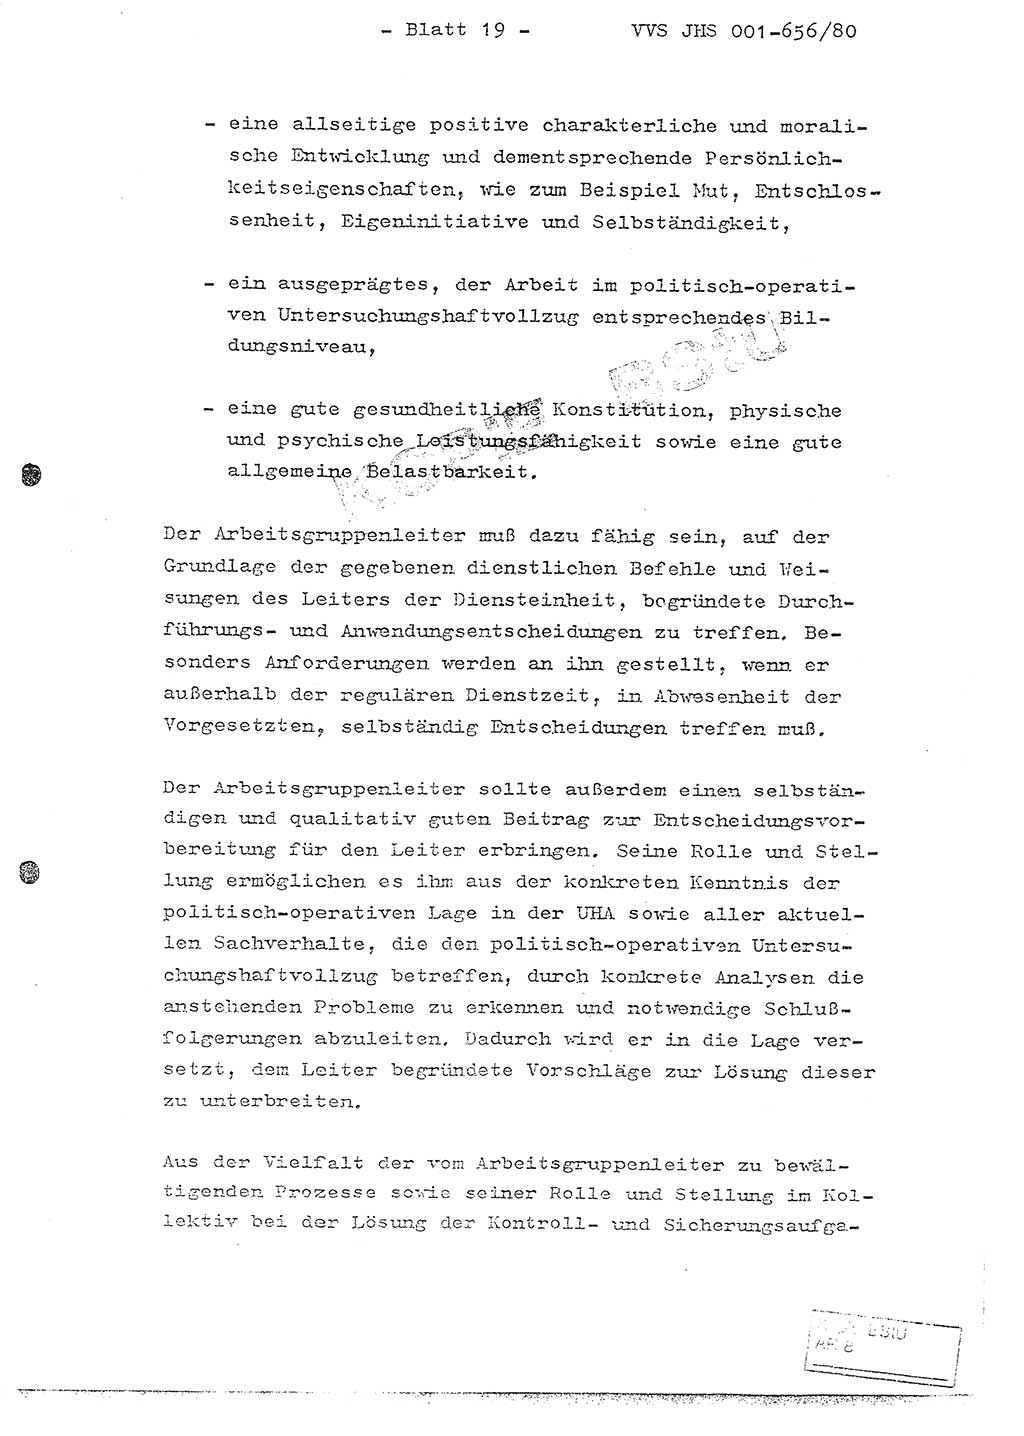 Fachschulabschlußarbeit Unterleutnant Christian Kätzel (Abt. ⅩⅣ), Ministerium für Staatssicherheit (MfS) [Deutsche Demokratische Republik (DDR)], Juristische Hochschule (JHS), Vertrauliche Verschlußsache (VVS) 001-656/80, Potsdam 1980, Blatt 19 (FS-Abschl.-Arb. MfS DDR JHS VVS 001-656/80 1980, Bl. 19)